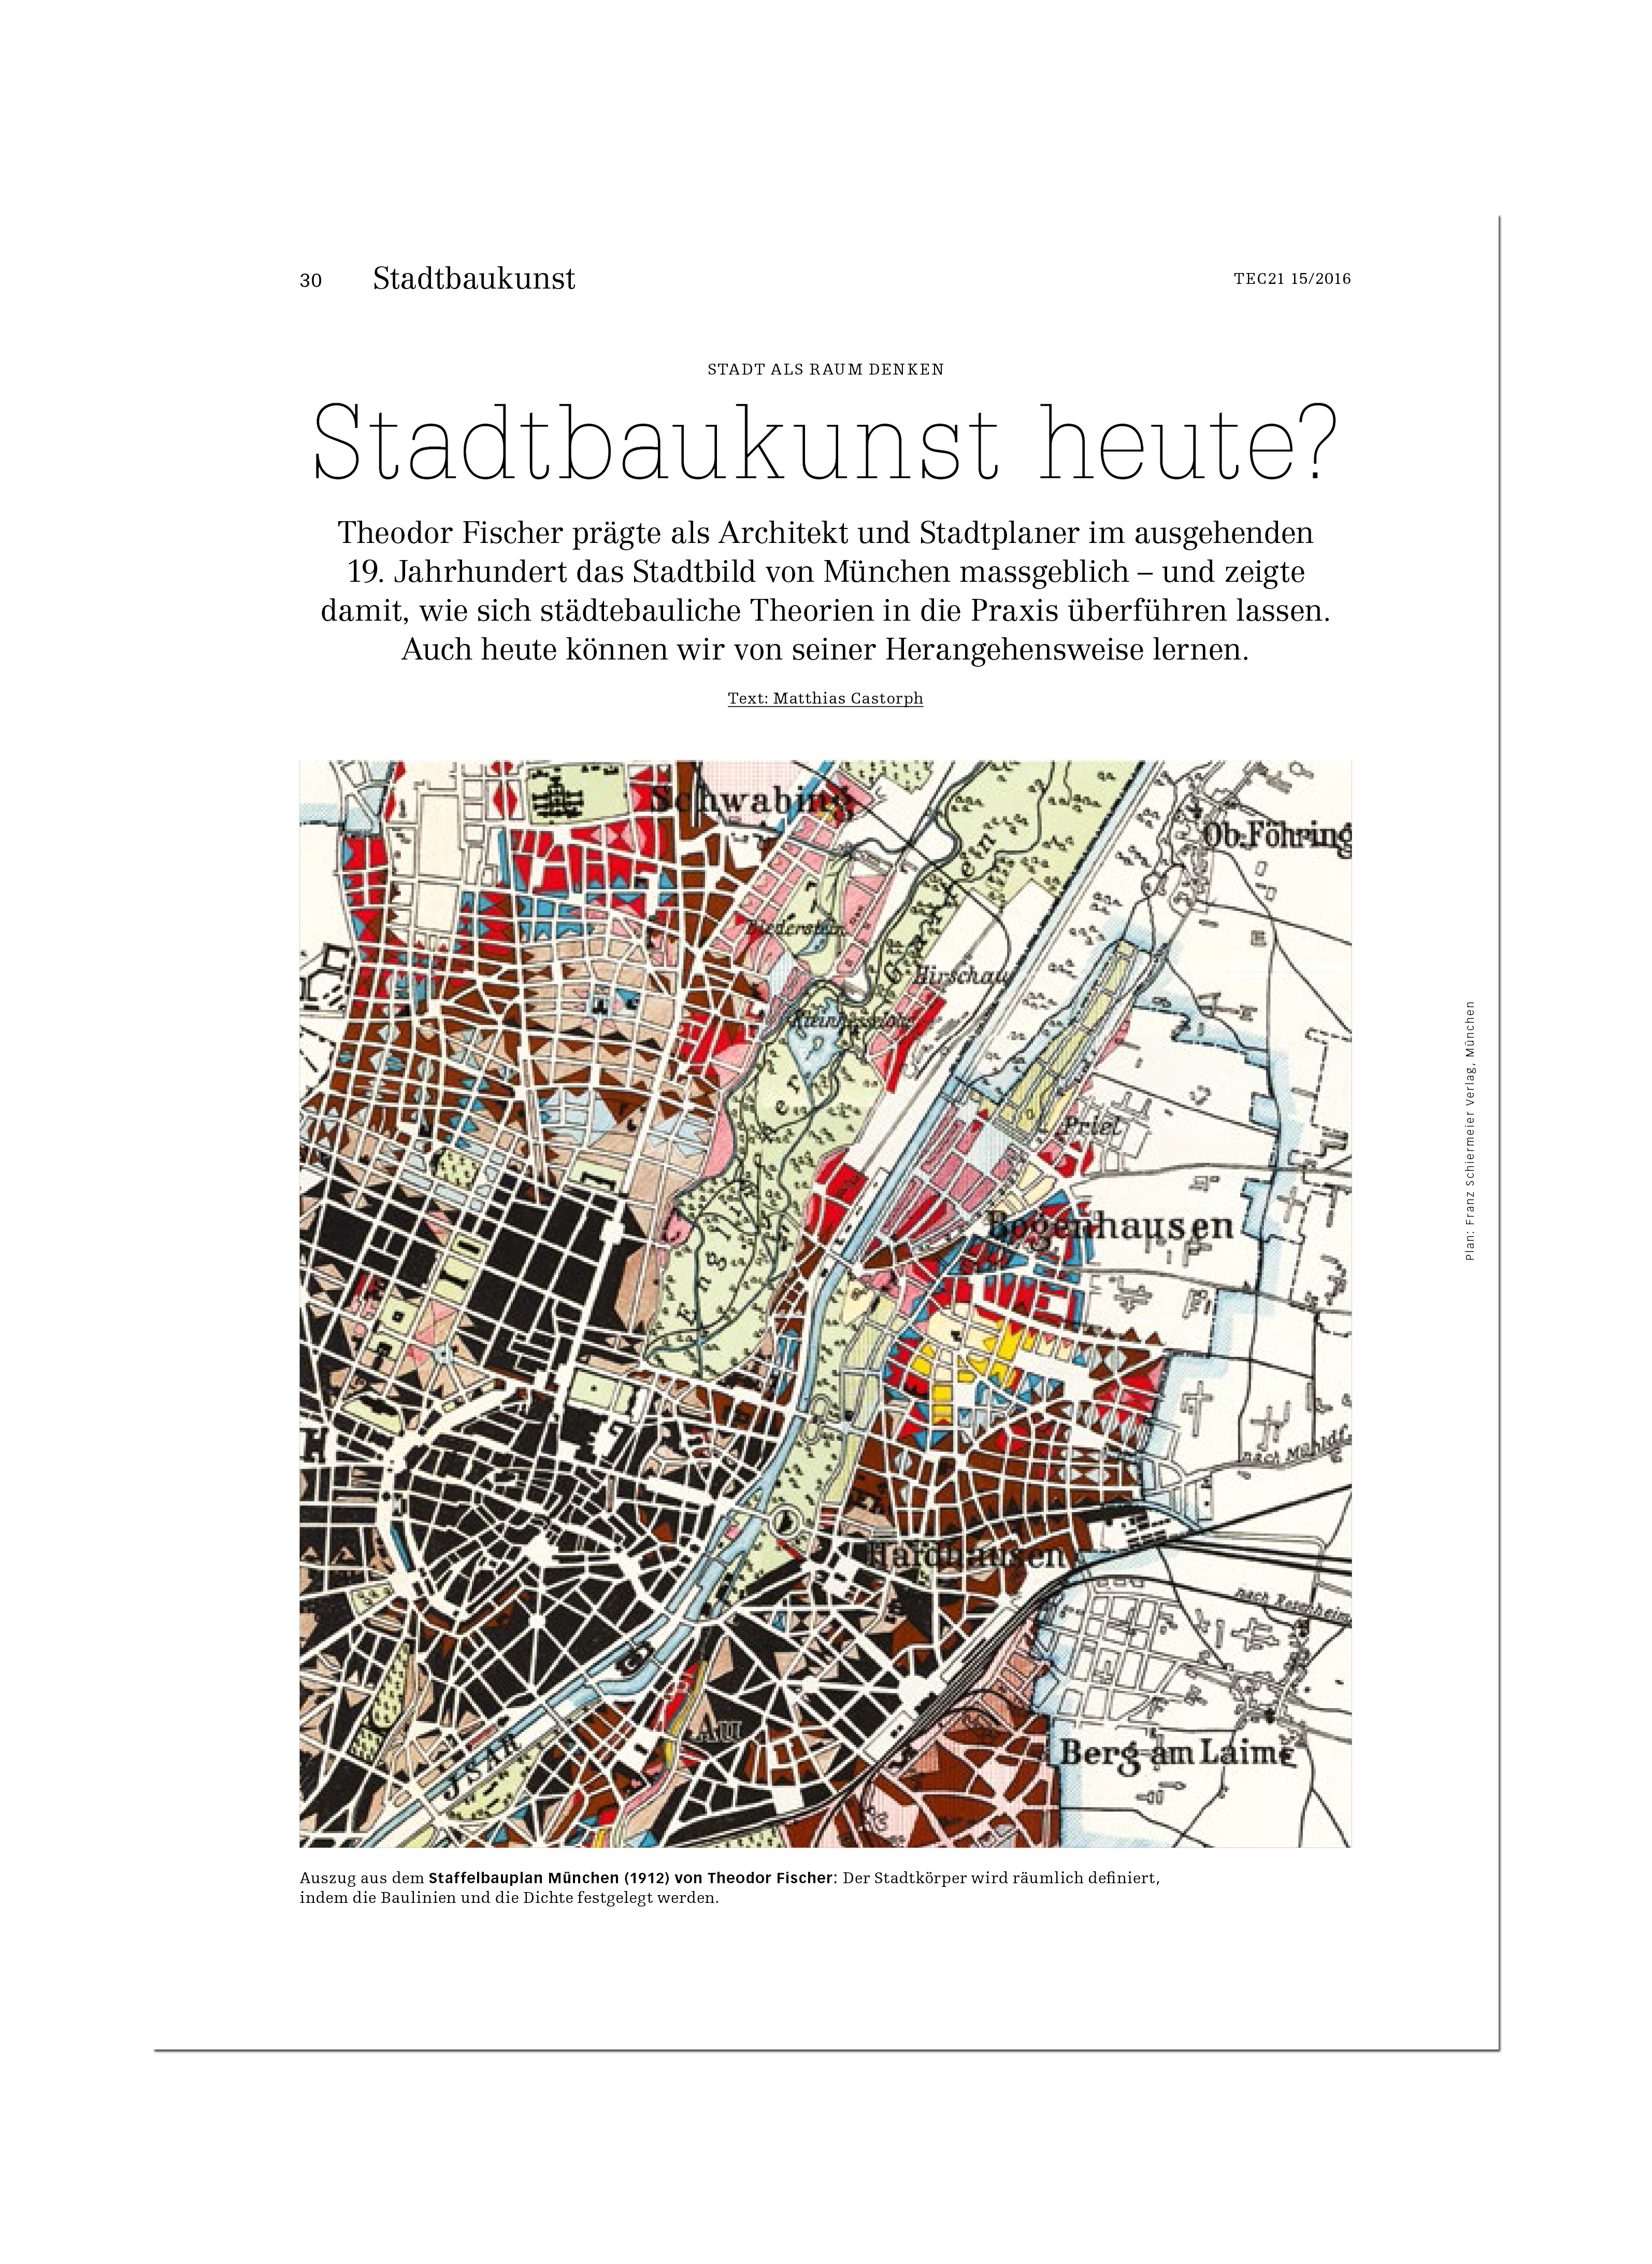 Goetz Castorph Lehmann Tabillion Architektur Städtebau München Beitrag Heft Magazin TEC21 Schweizerische Bauzeitung Stadtbaukunst heute